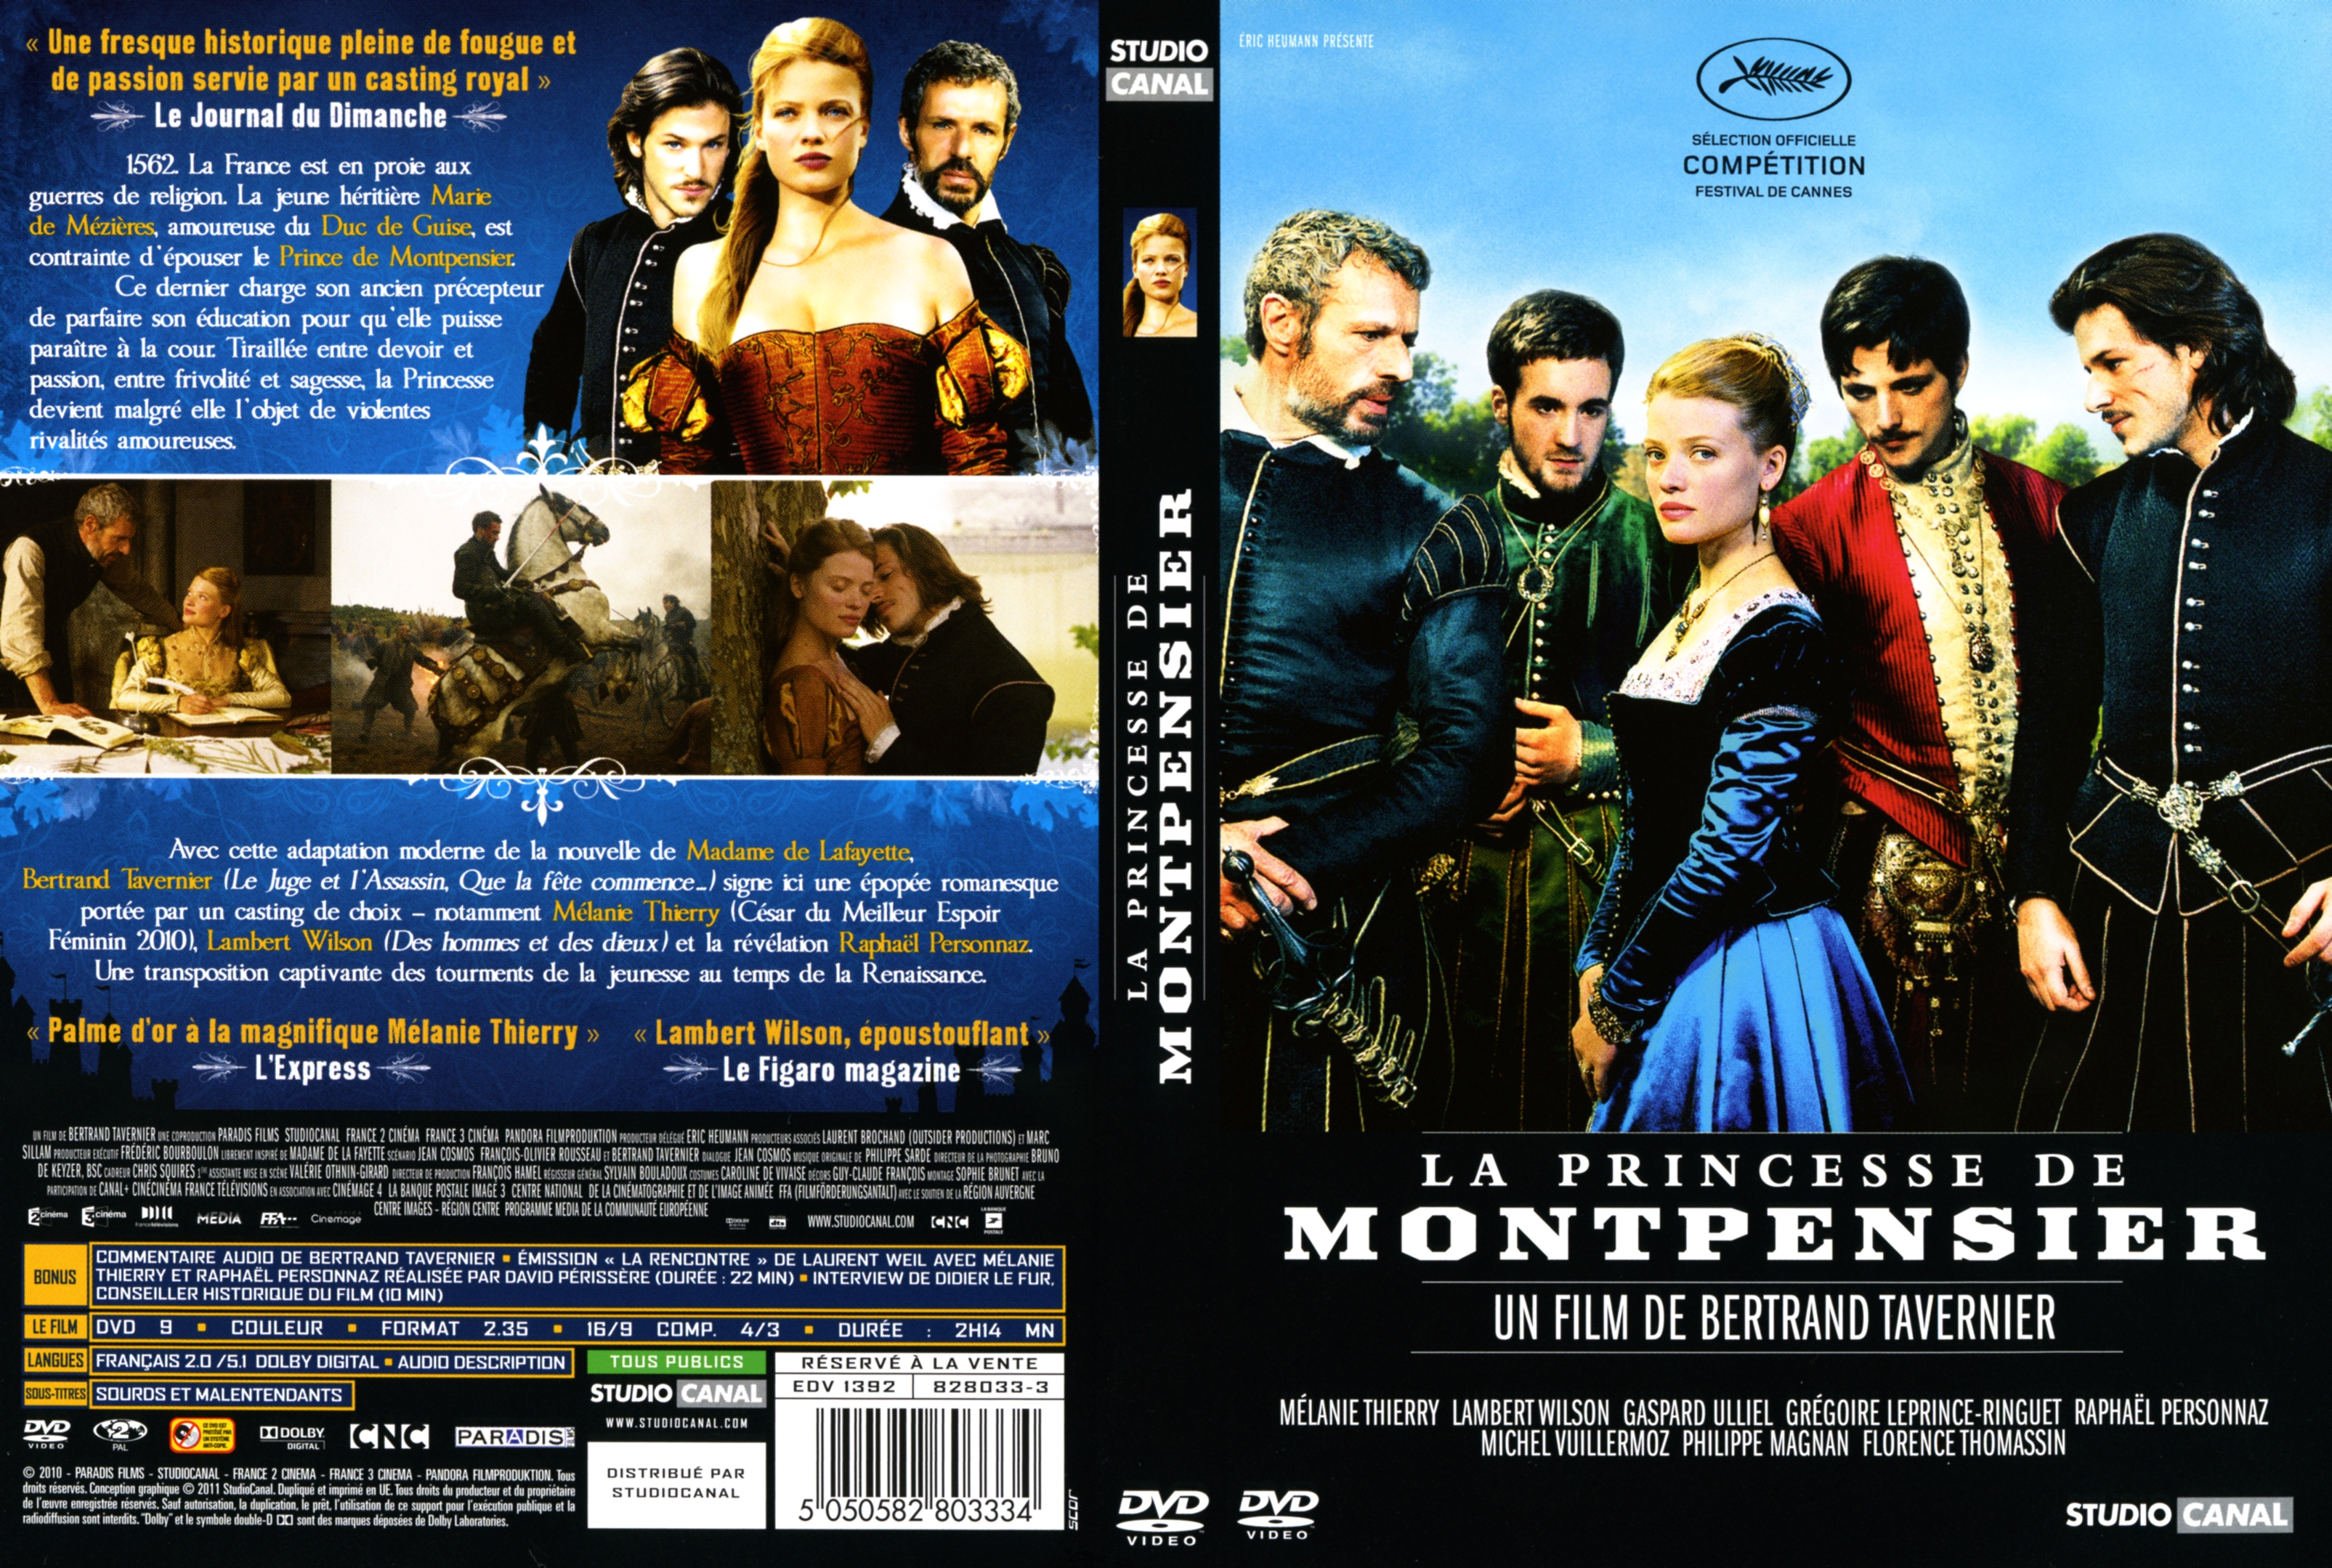 Jaquette DVD La princesse de Montpensier